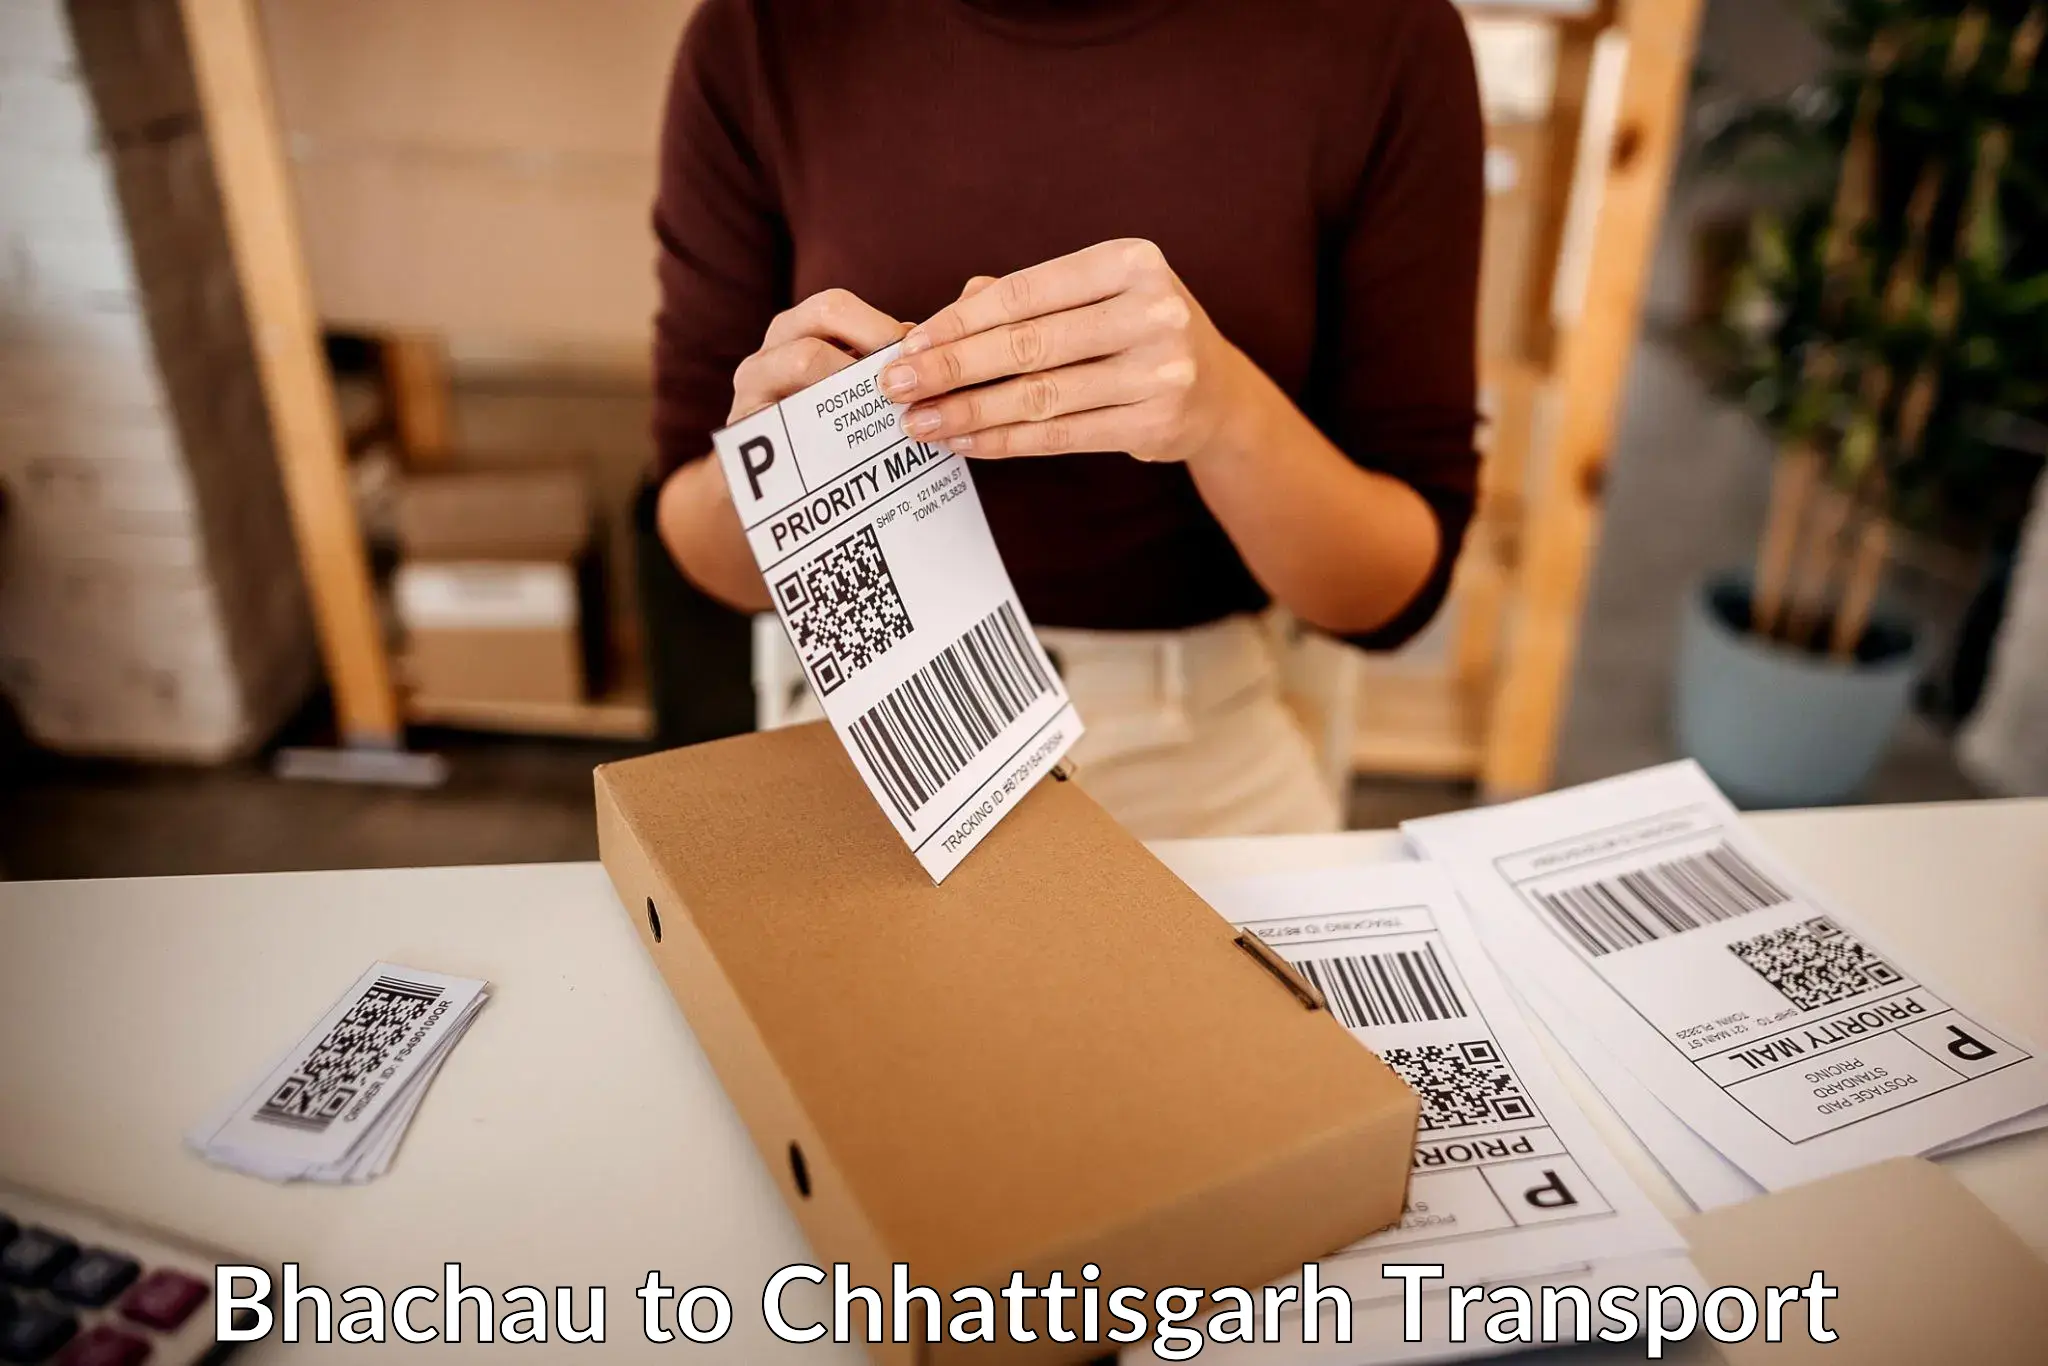 Cargo transport services Bhachau to Chhattisgarh